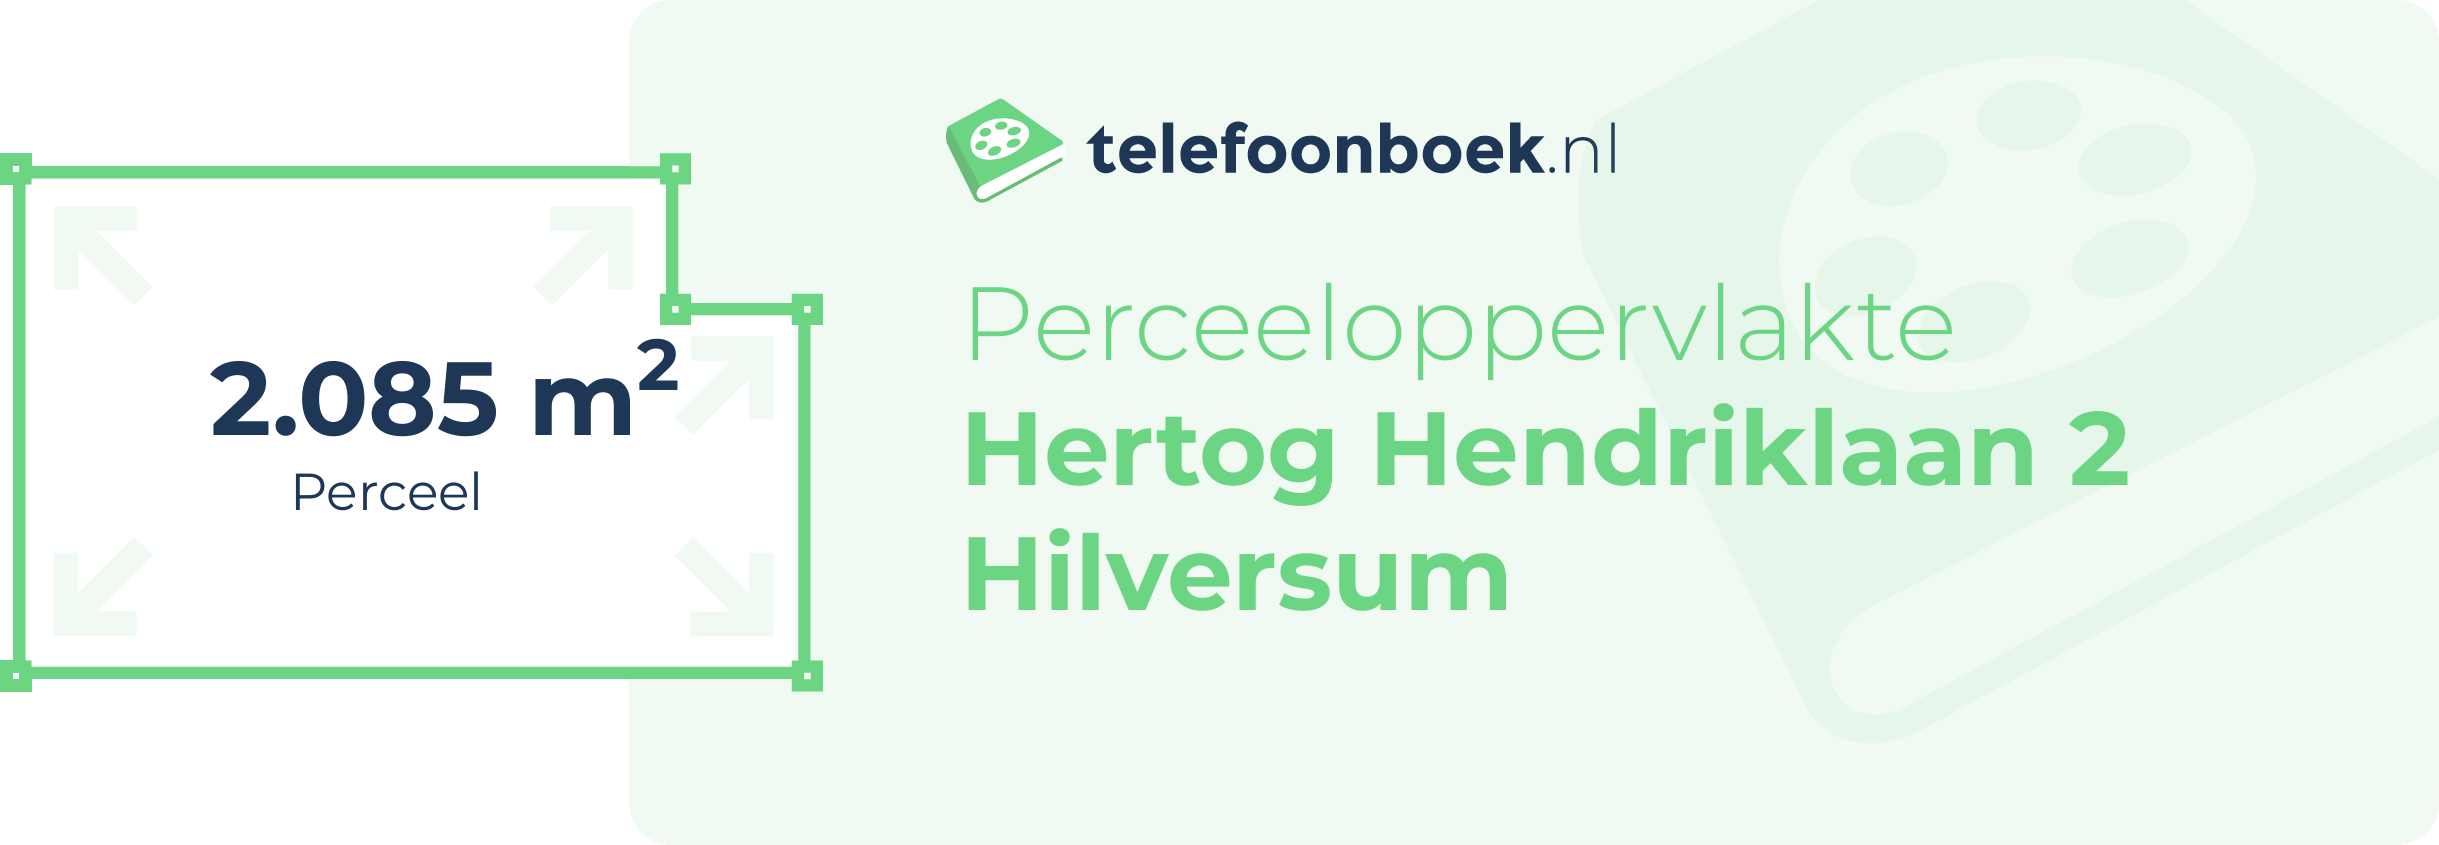 Perceeloppervlakte Hertog Hendriklaan 2 Hilversum